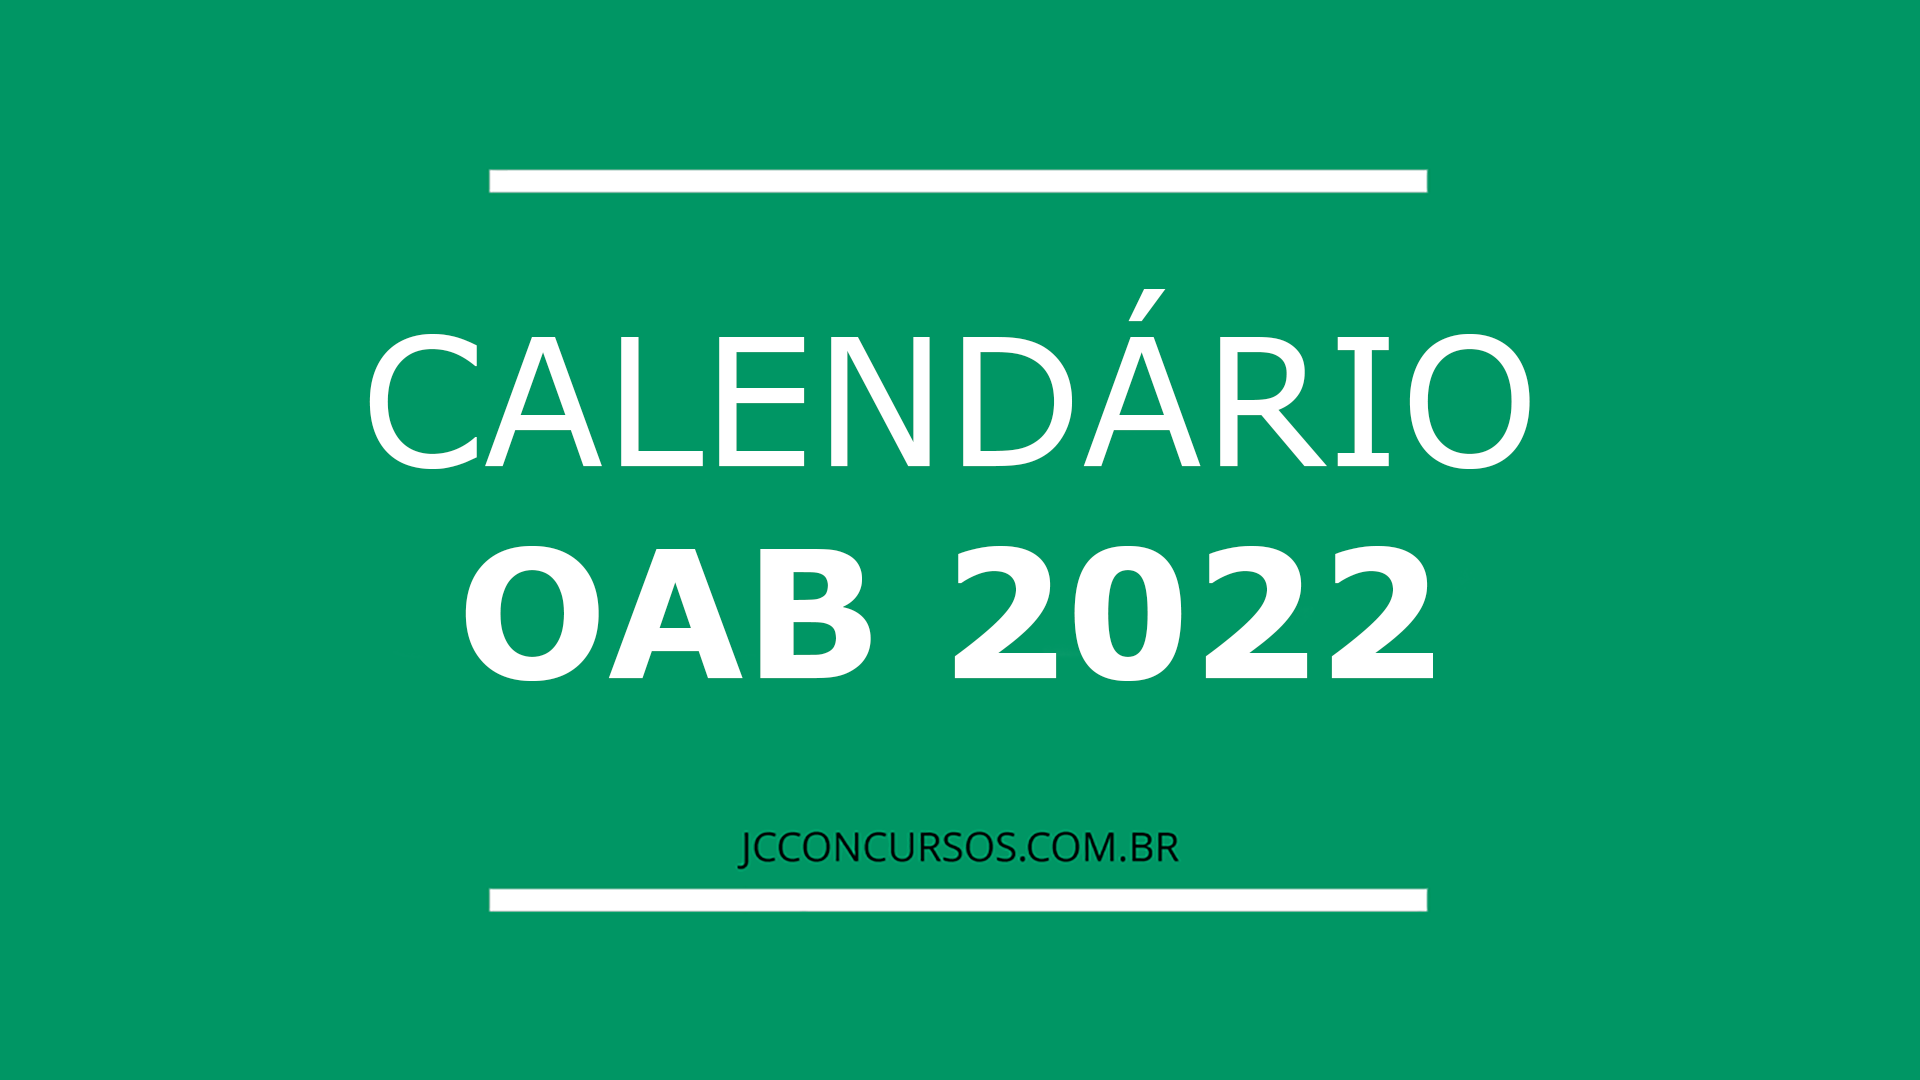 Calendário OAB 2022: confira as datas oficiais das provas no Brasil